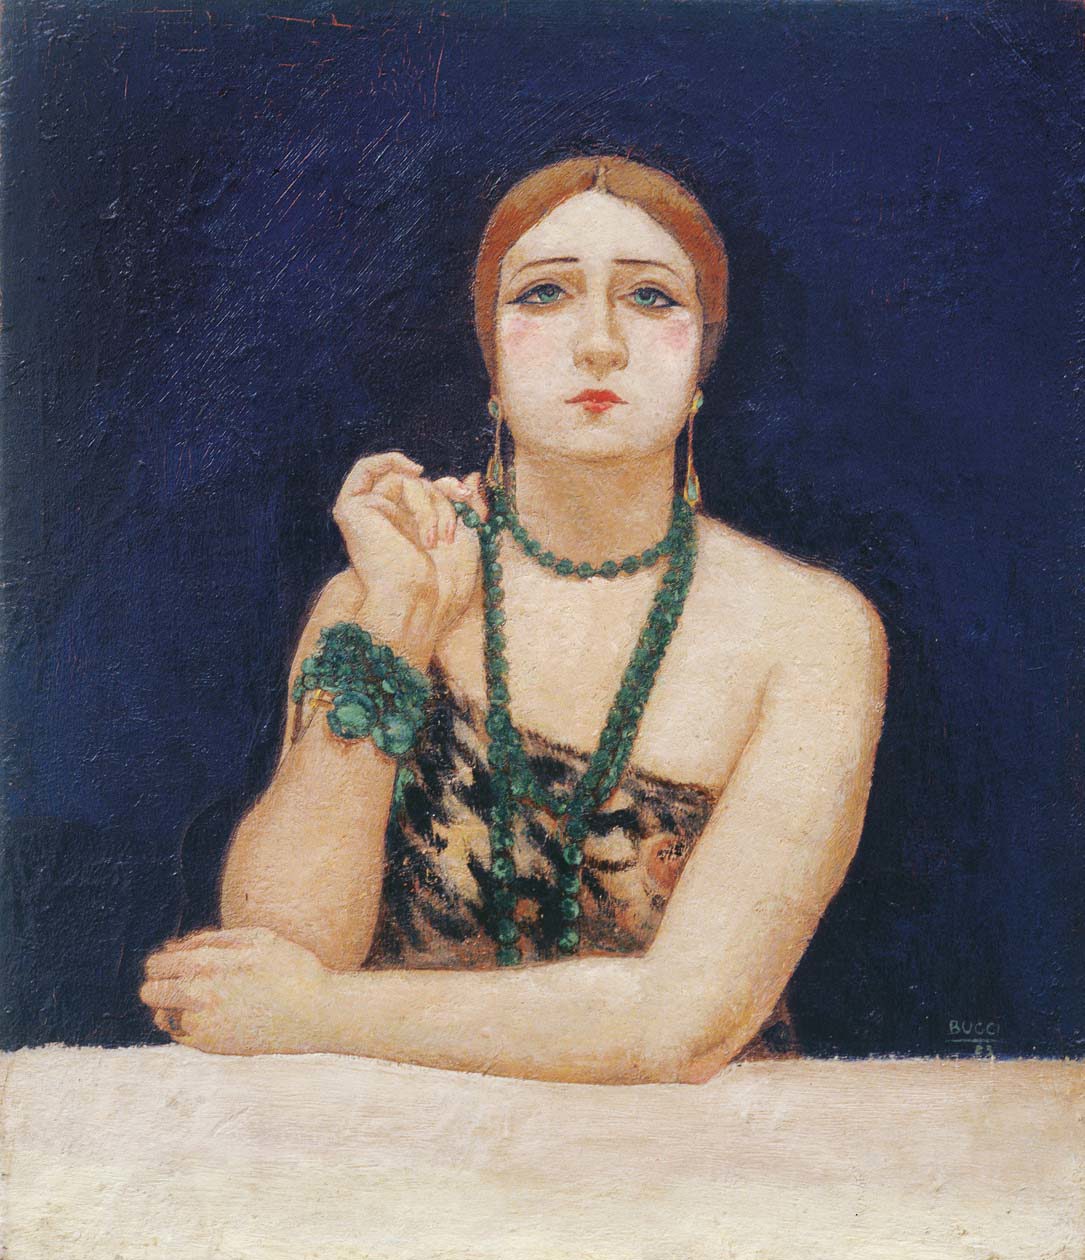 ANSELMO BUCCI Rosa Rodrigo (la bella), 1923-1925 olio su tela, 72 x 60 Matteo Maria Marpelli Arte Moderna e Contemporanea